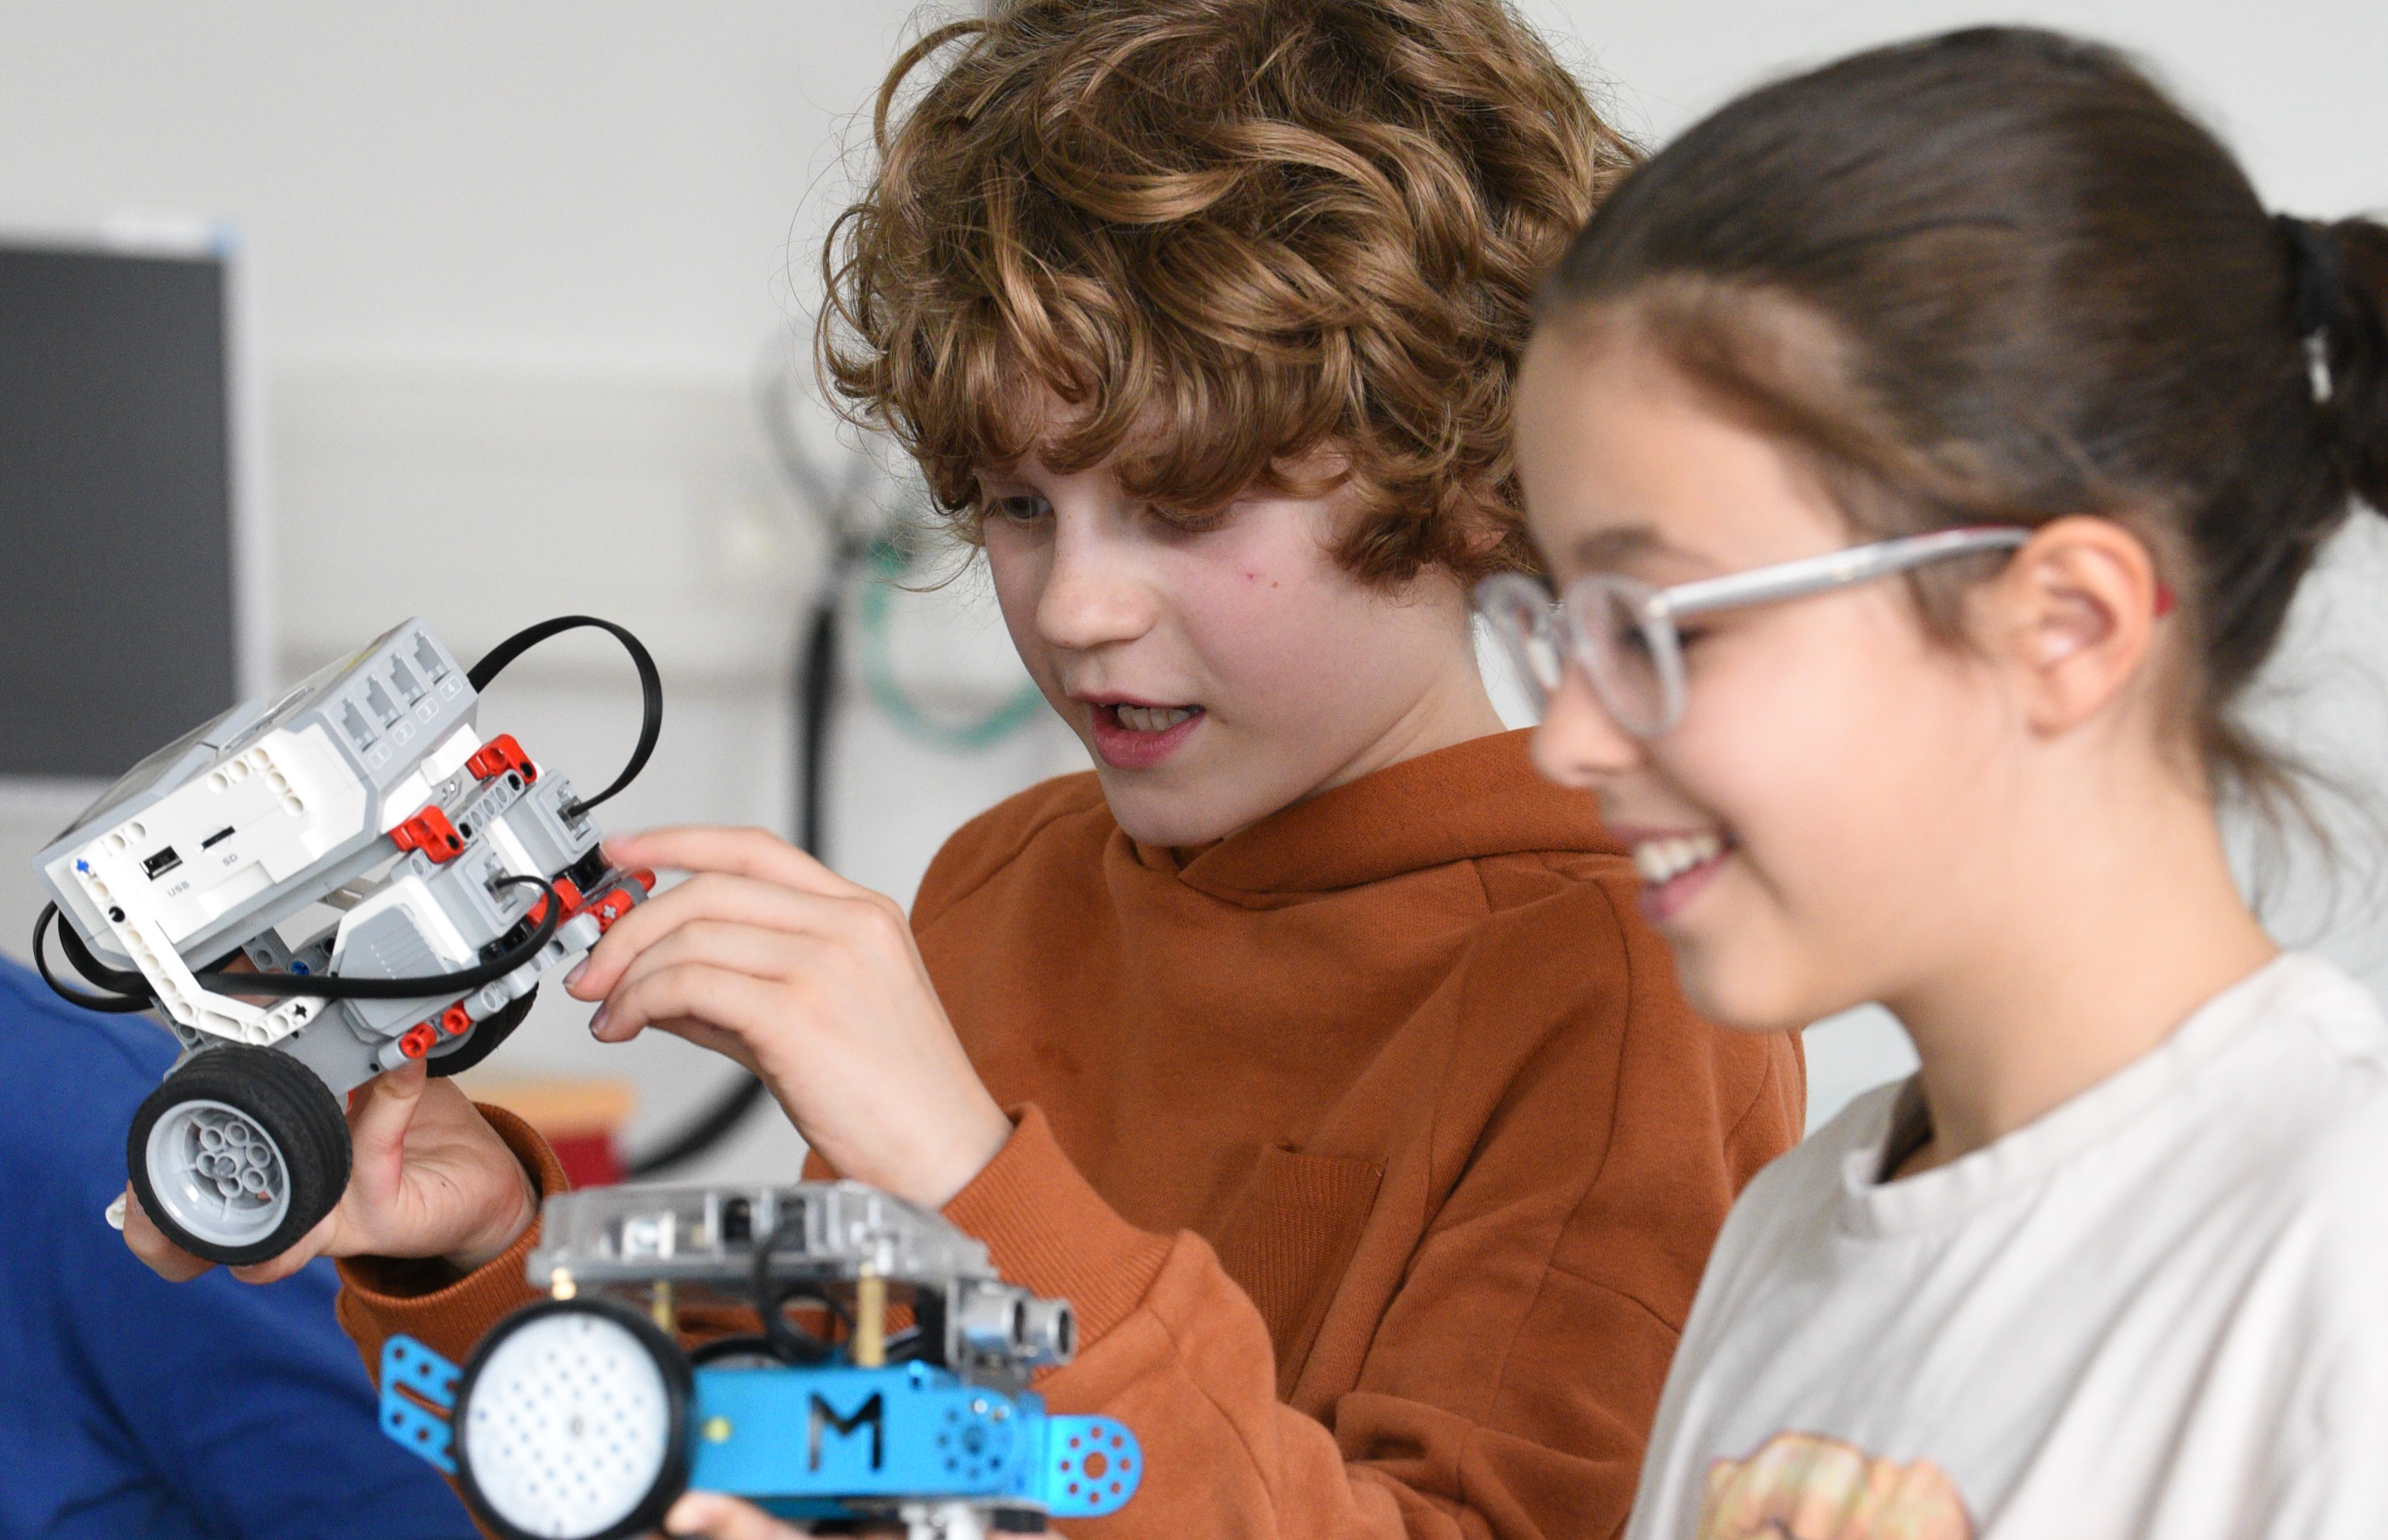 Zwei Kinder bauen ein Objekt aus Legotechnik.